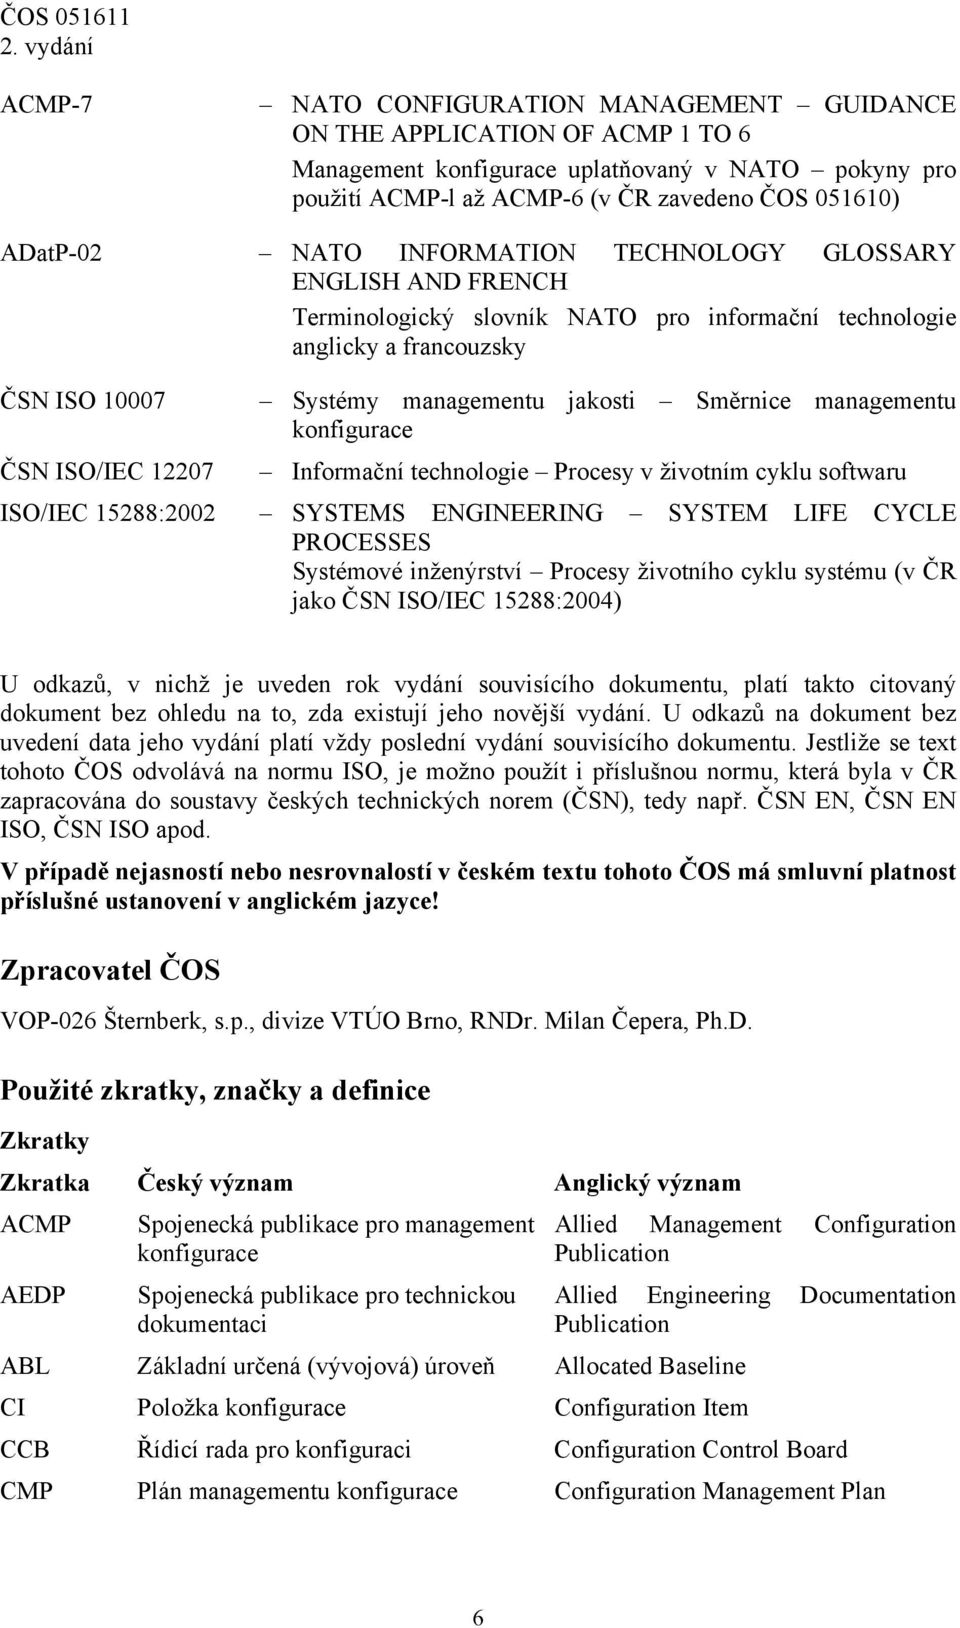 konfigurace ČSN ISO/IEC 12207 Informační technologie Procesy v životním cyklu softwaru ISO/IEC 15288:2002 SYSTEMS ENGINEERING SYSTEM LIFE CYCLE PROCESSES Systémové inženýrství Procesy životního cyklu